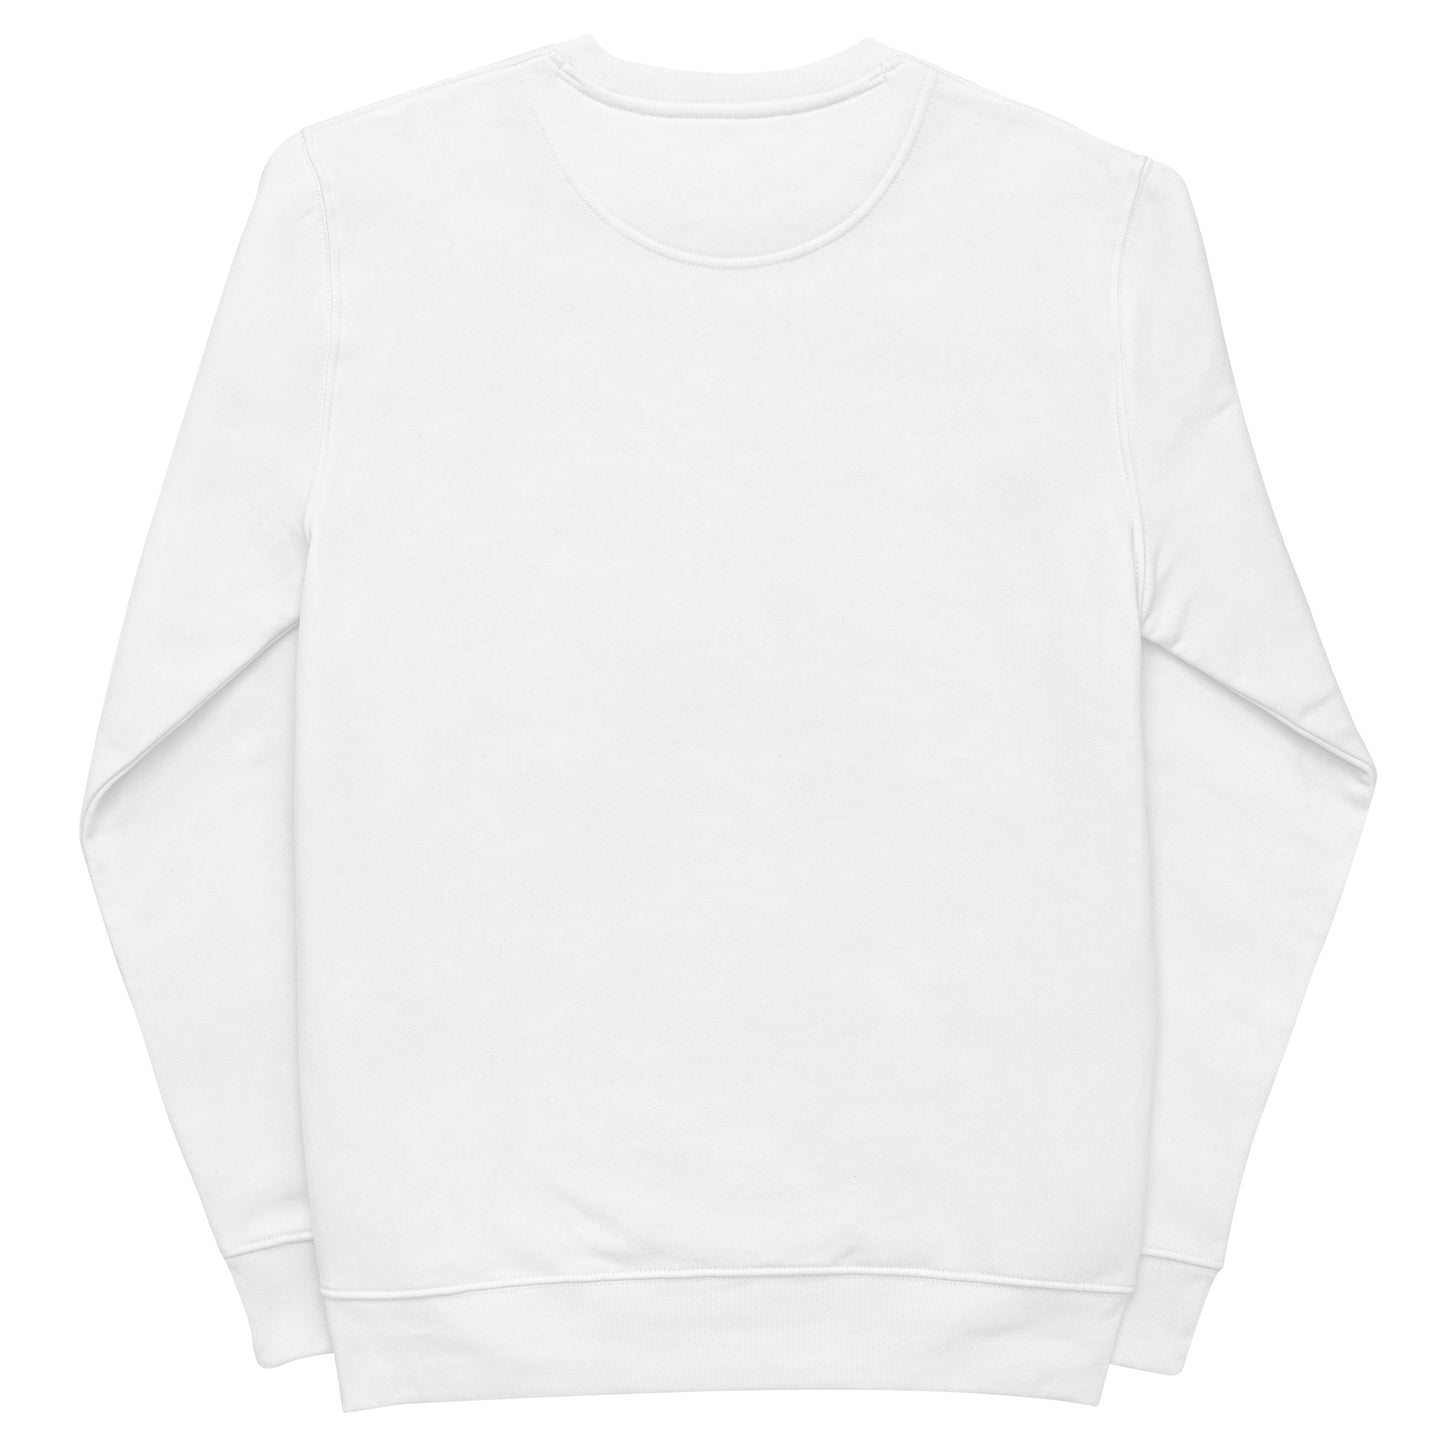 Zup Zup Unisex eco sweatshirt (Black Text)